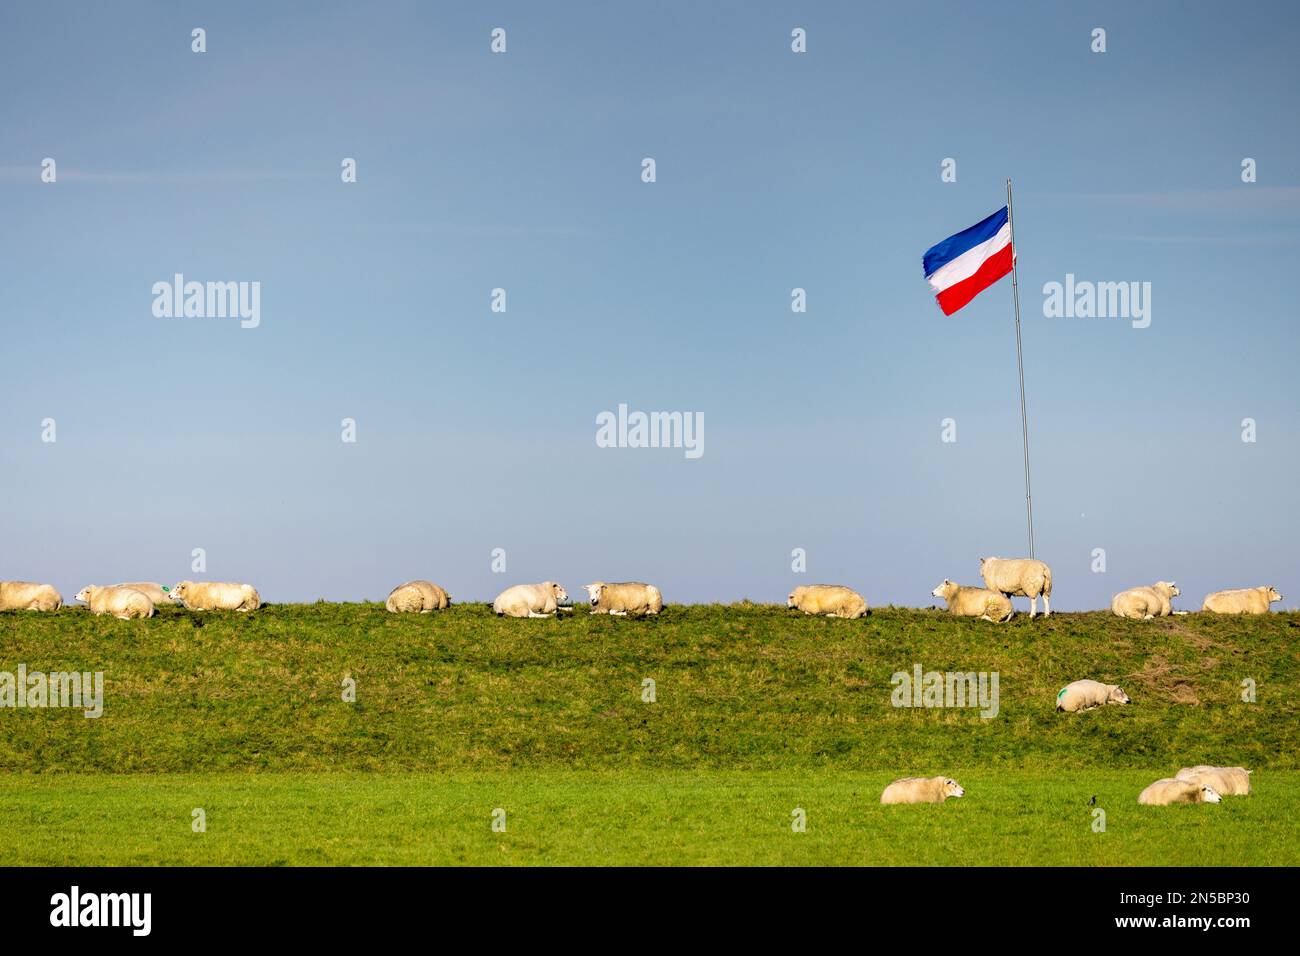 Les agriculteurs protestent contre la politique agricole de l'UE, le drapeau est à l'envers, pays-Bas, Frison, NSG Buitendijks, Ferwert Banque D'Images